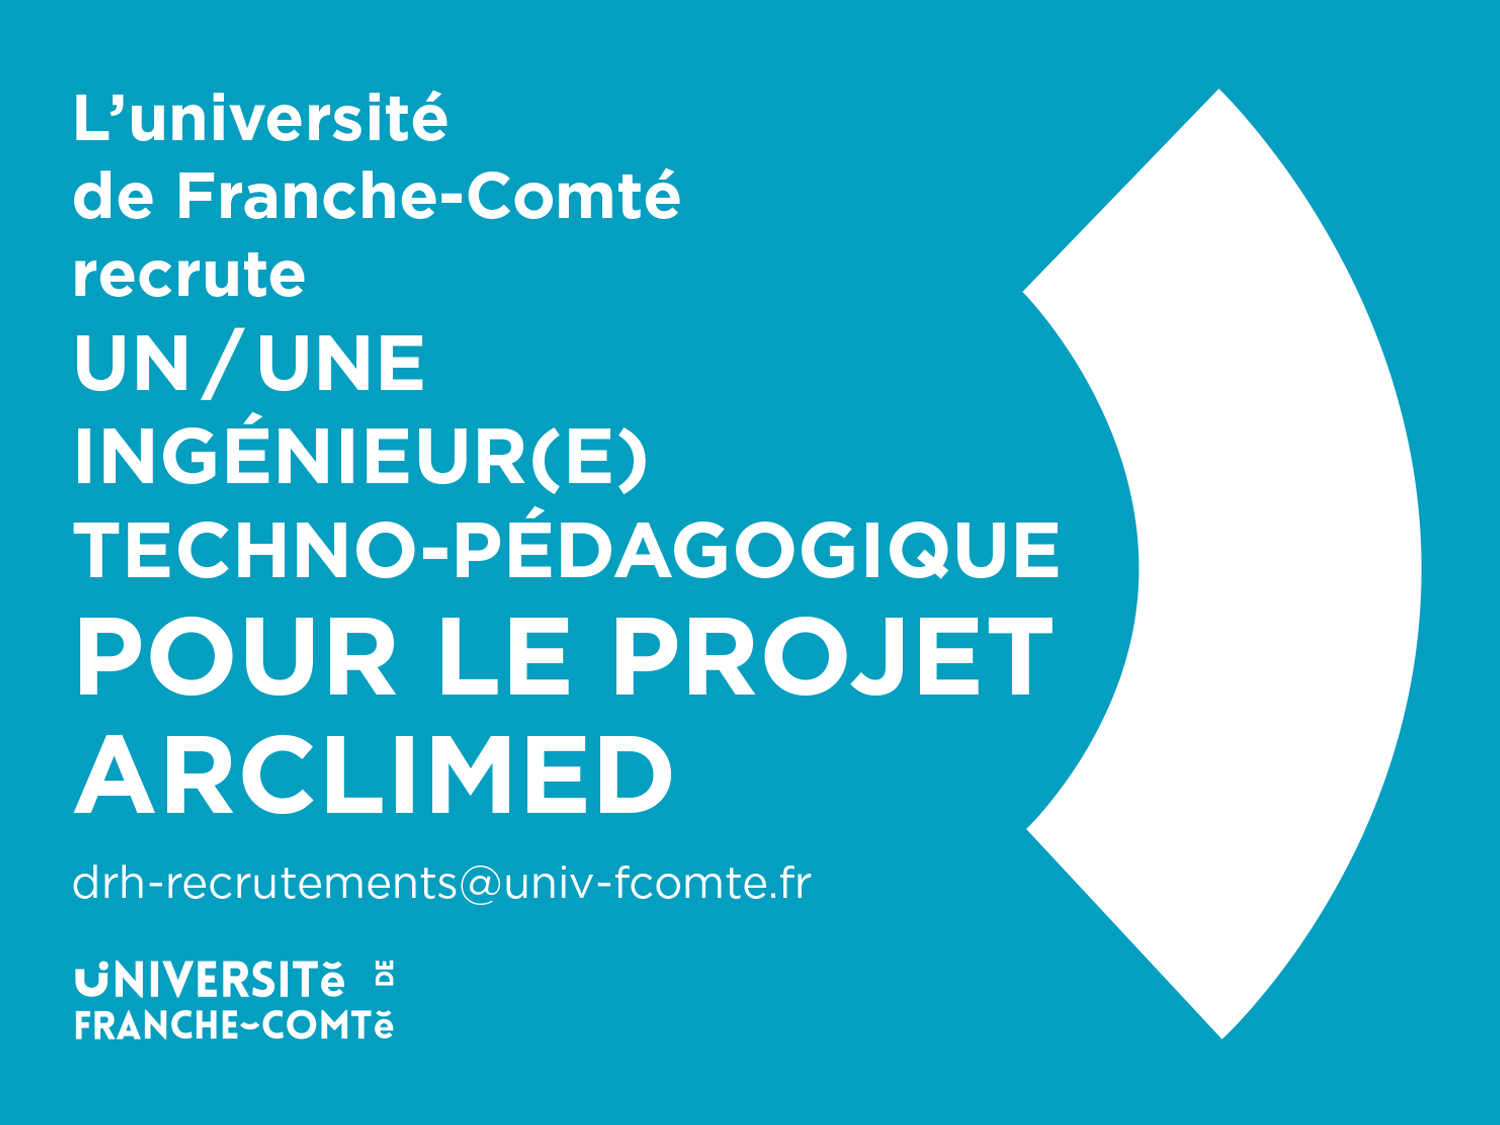 L’université de Franche-Comté recrute un/une Ingénieur(e) techno-pédagogique pour le projet ARCLIMED